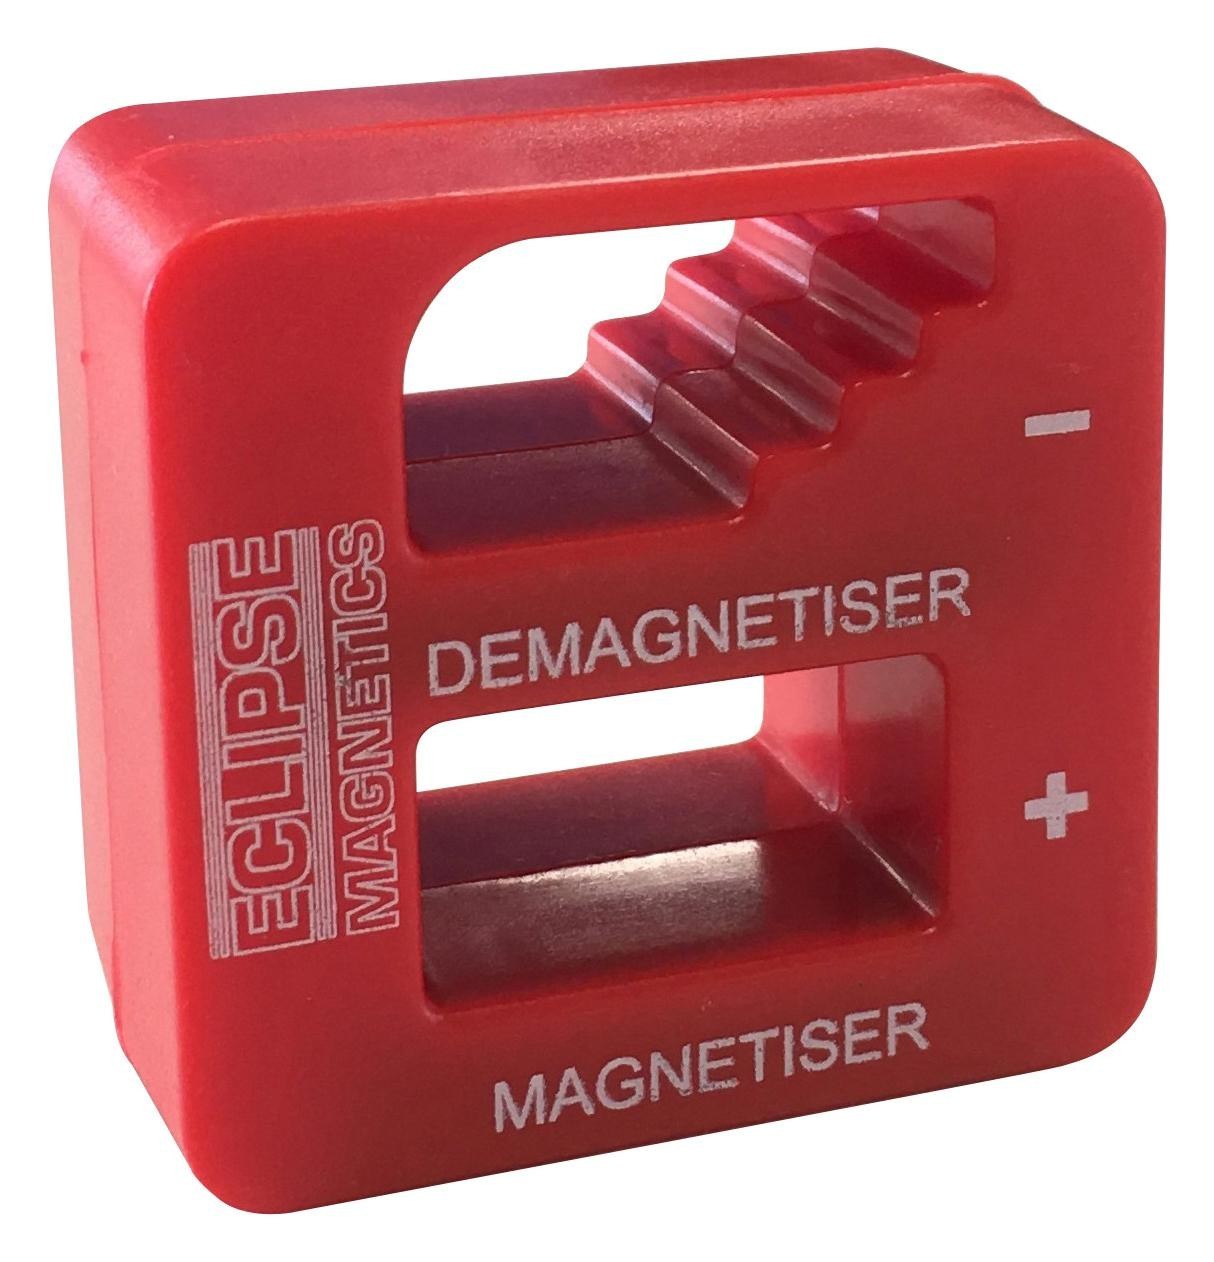 Eclipse Magnetics Mdt050 Tool Magnetiser, Demagnetising, Red